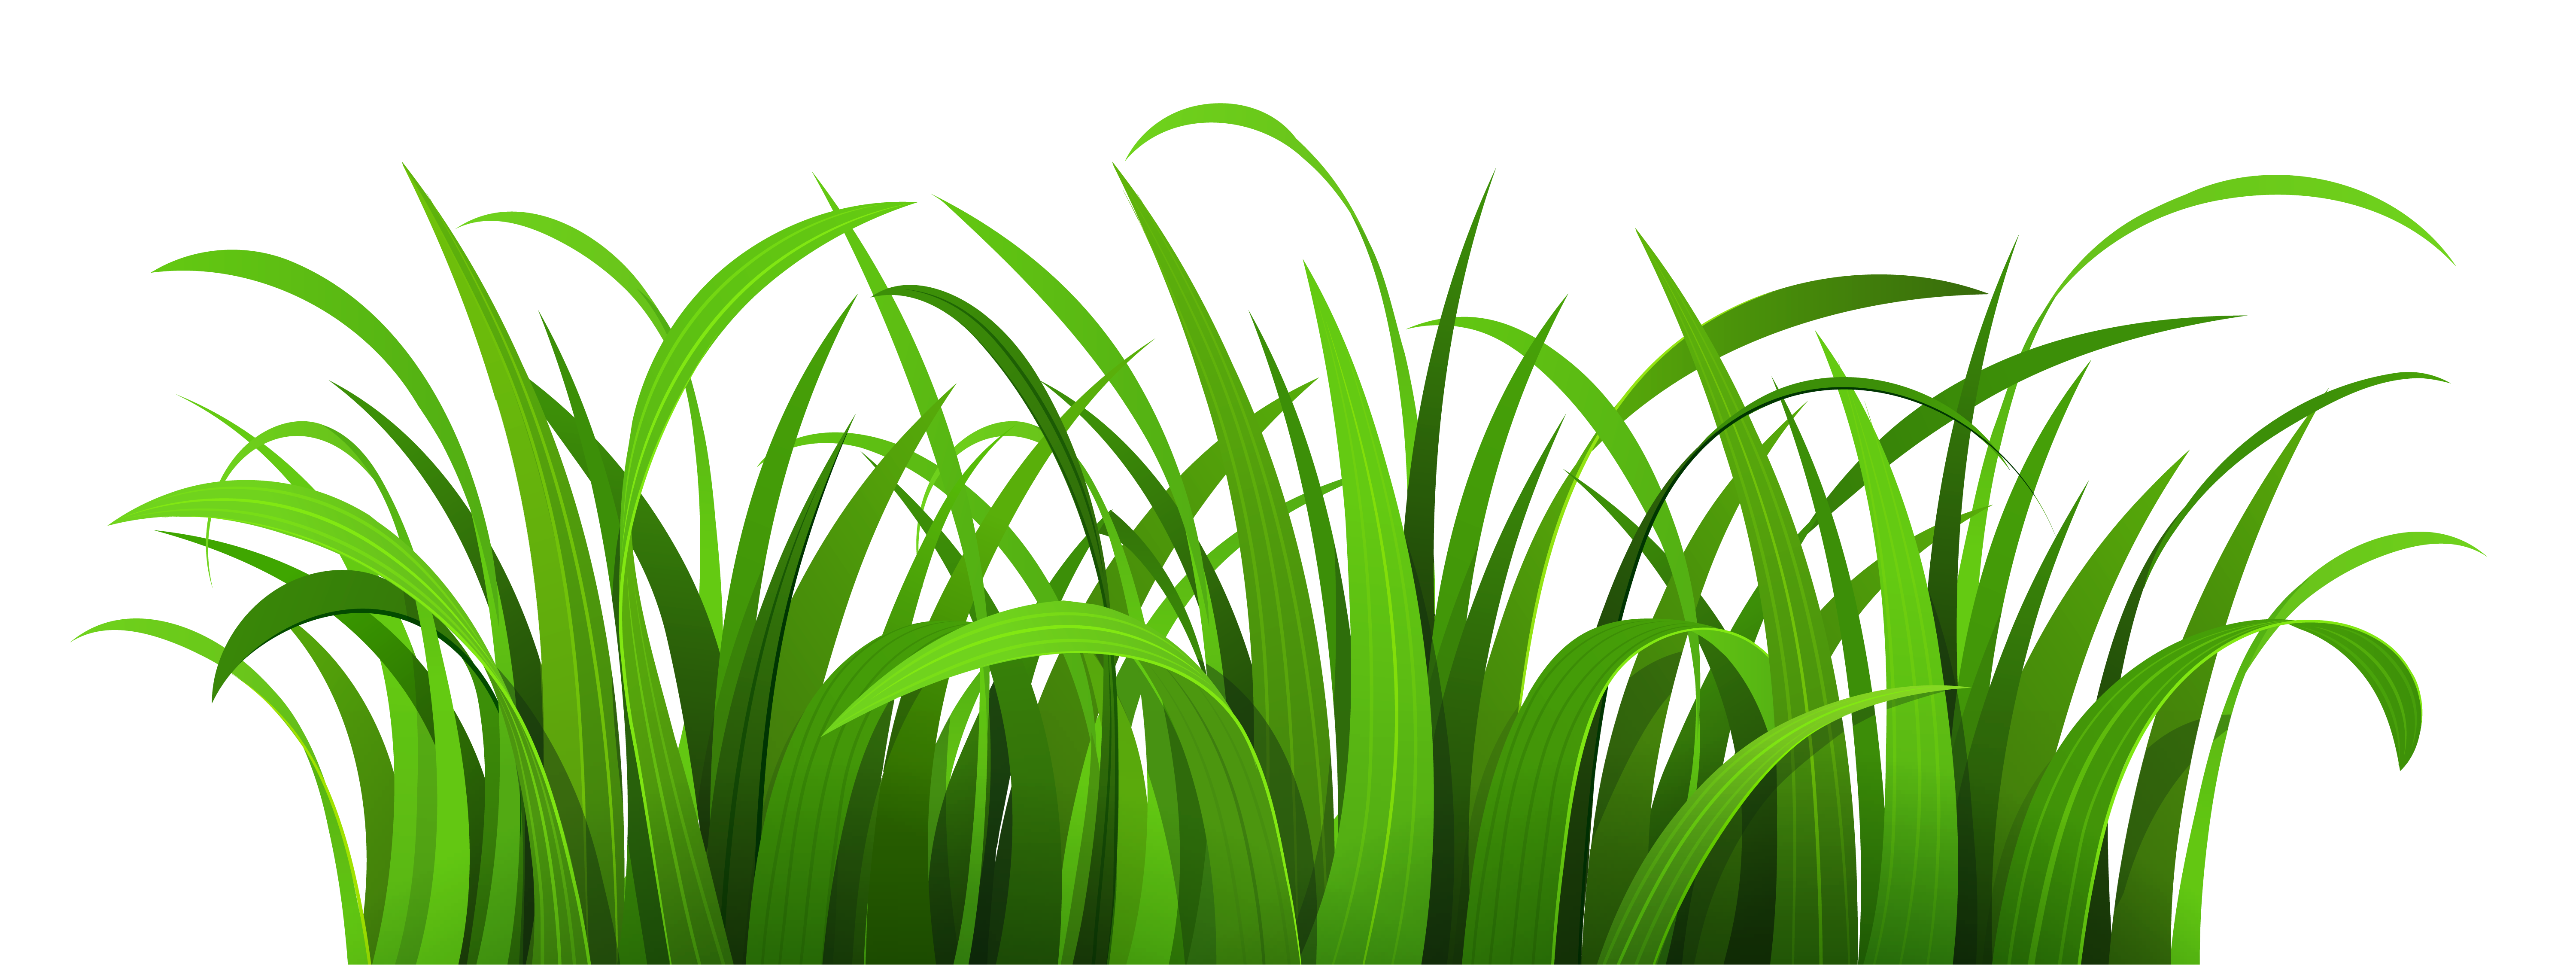 grass clipart